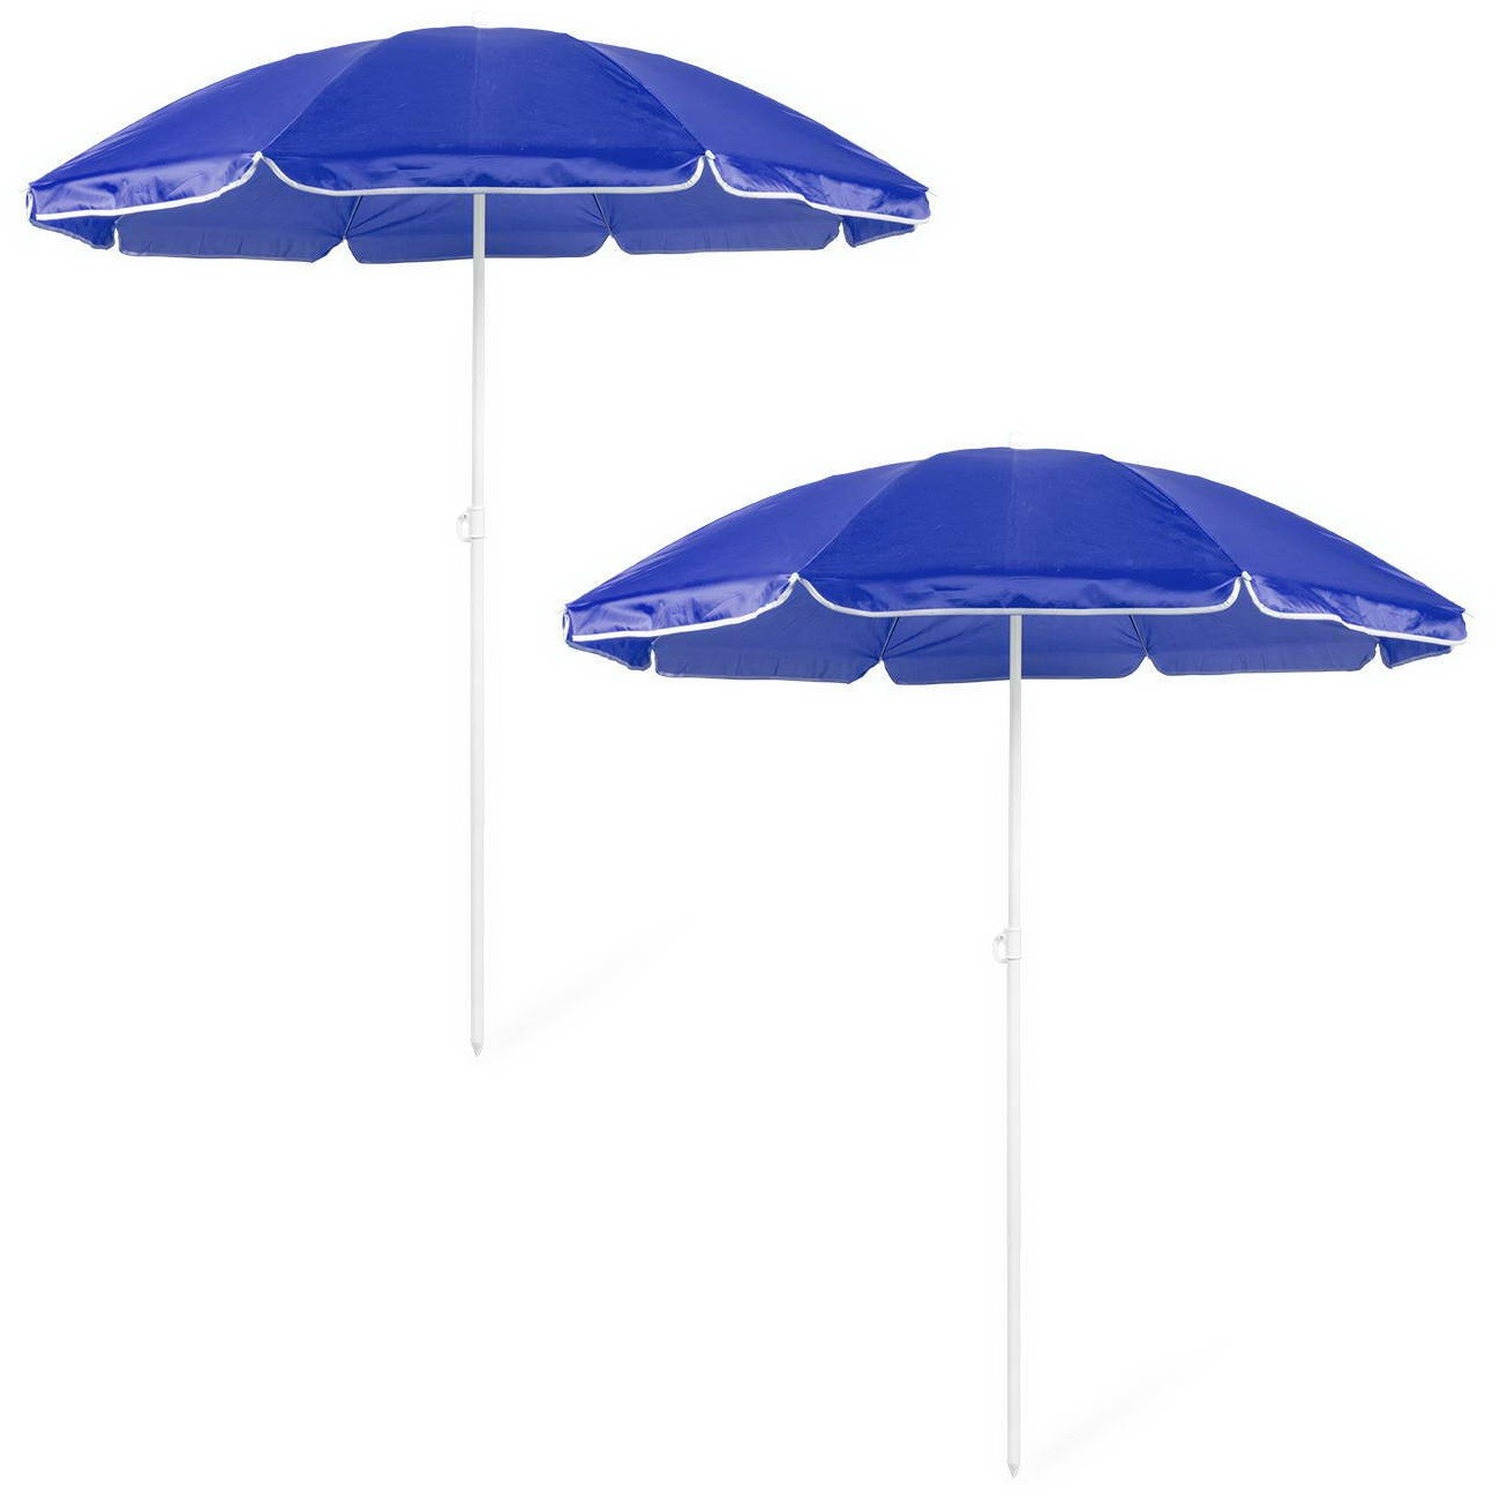 Voordeel set van 2x strandparasols blauw 150 cm diameter